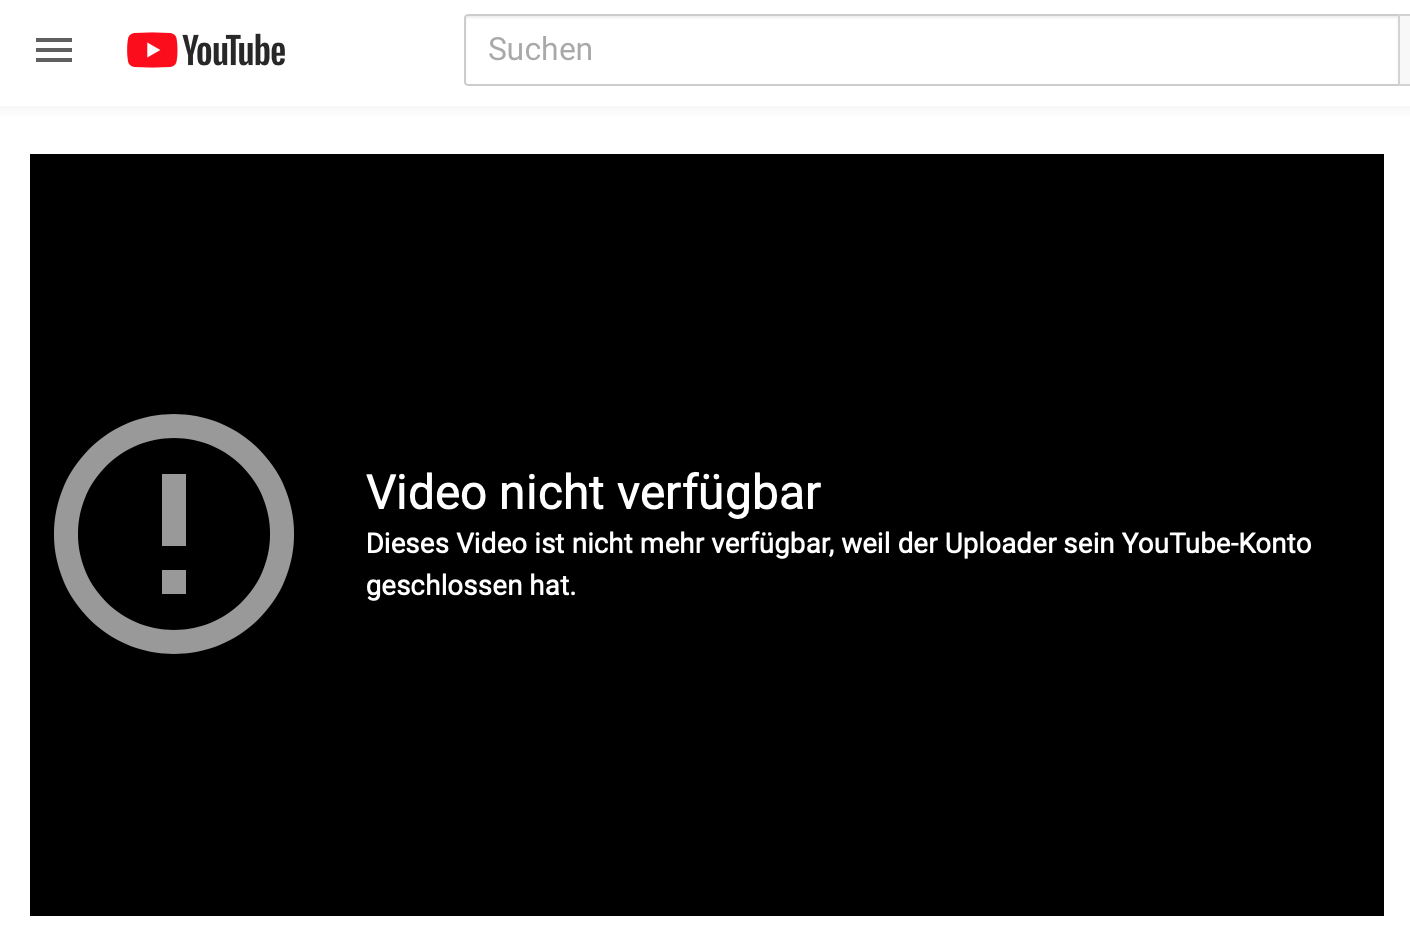 Youtube-Account von Lemisch geschlossen (25.4.19)